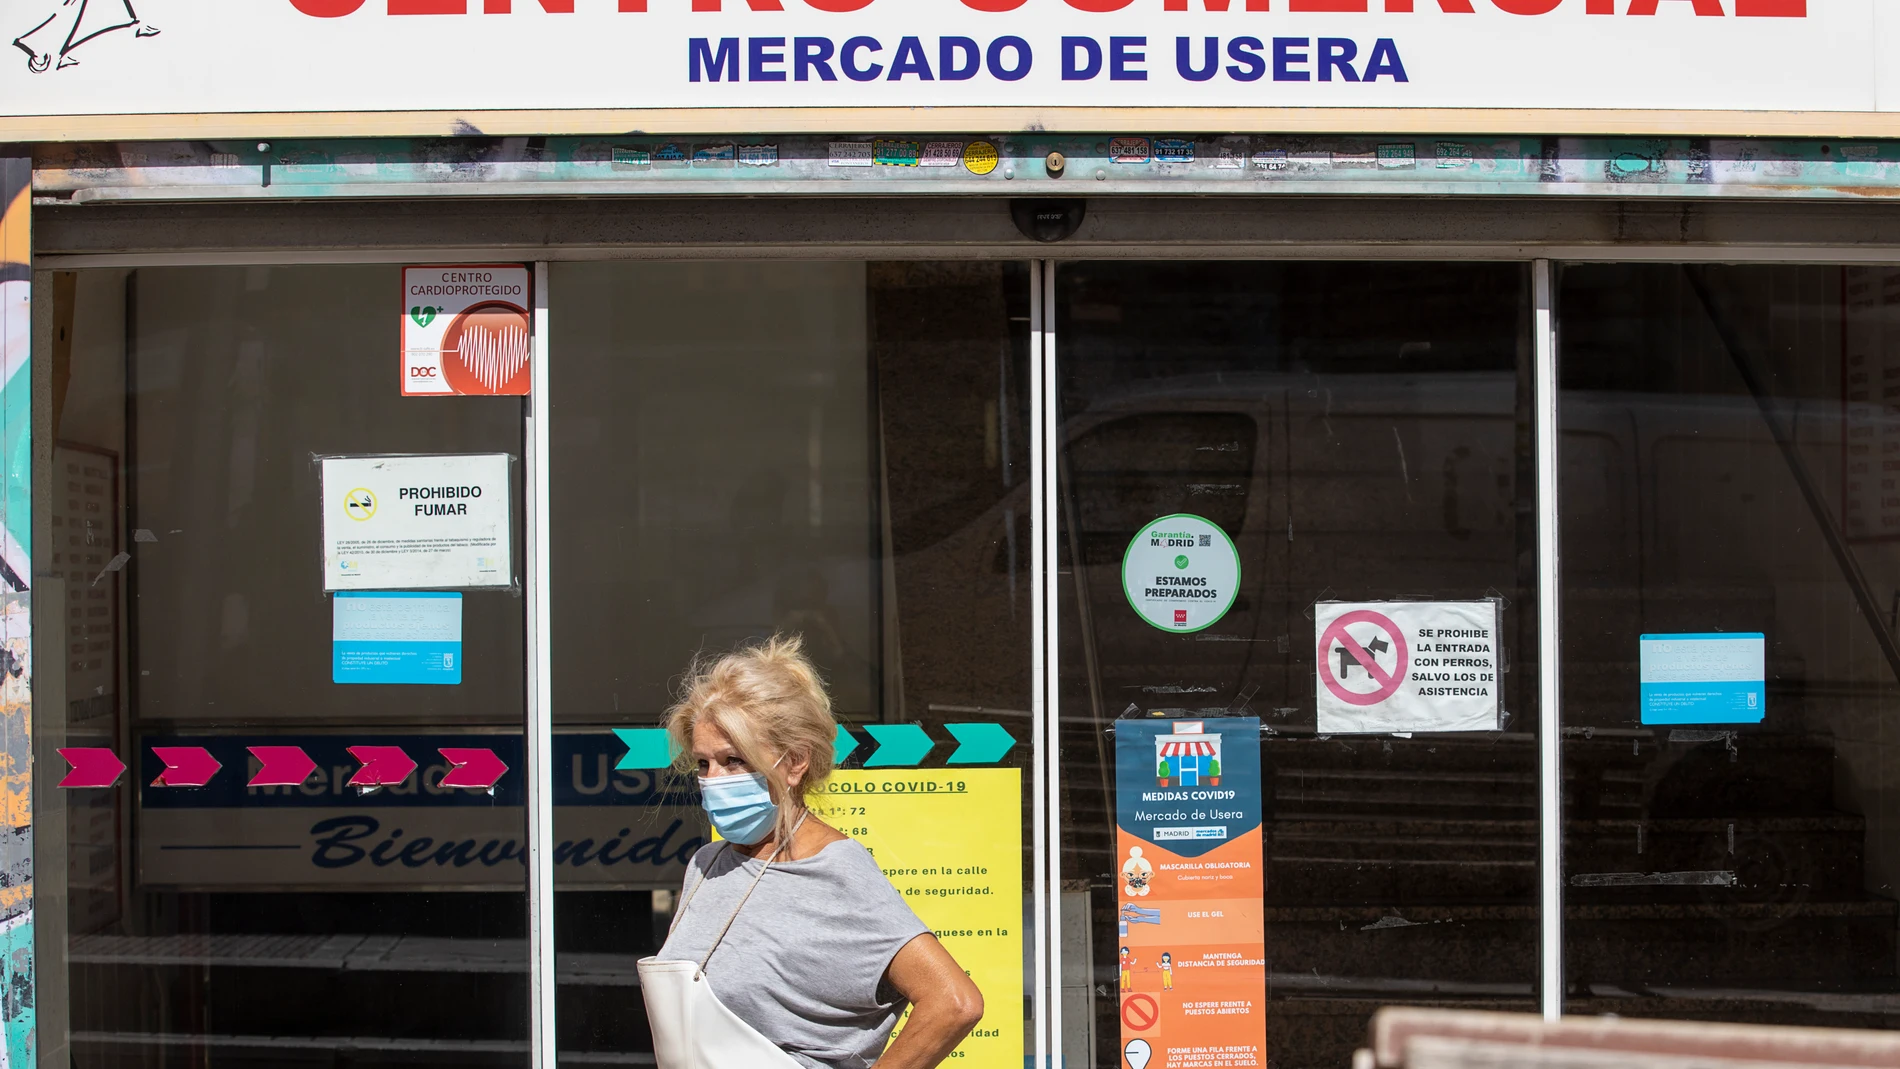 Ambiente en el madrileño barrio de Usera tras las medidas impuestas por la comunidad de Madrid, para combatir la pandemia por la COVID-19